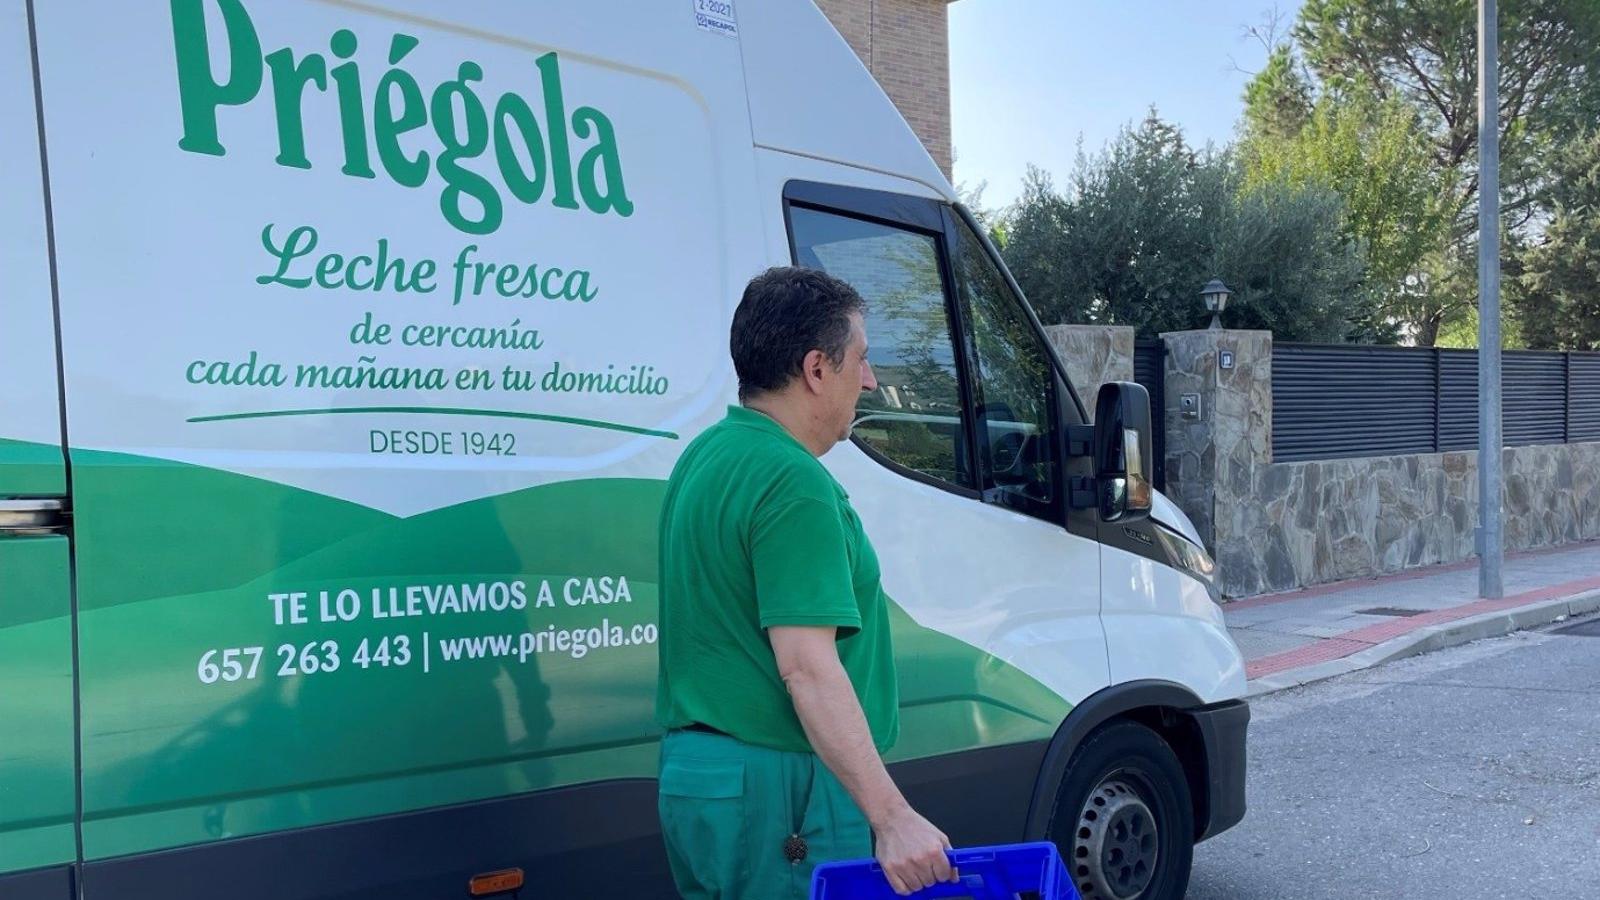 Priégola cumple 80 años en los hogares de Madrid con su leche fresca de cercanía